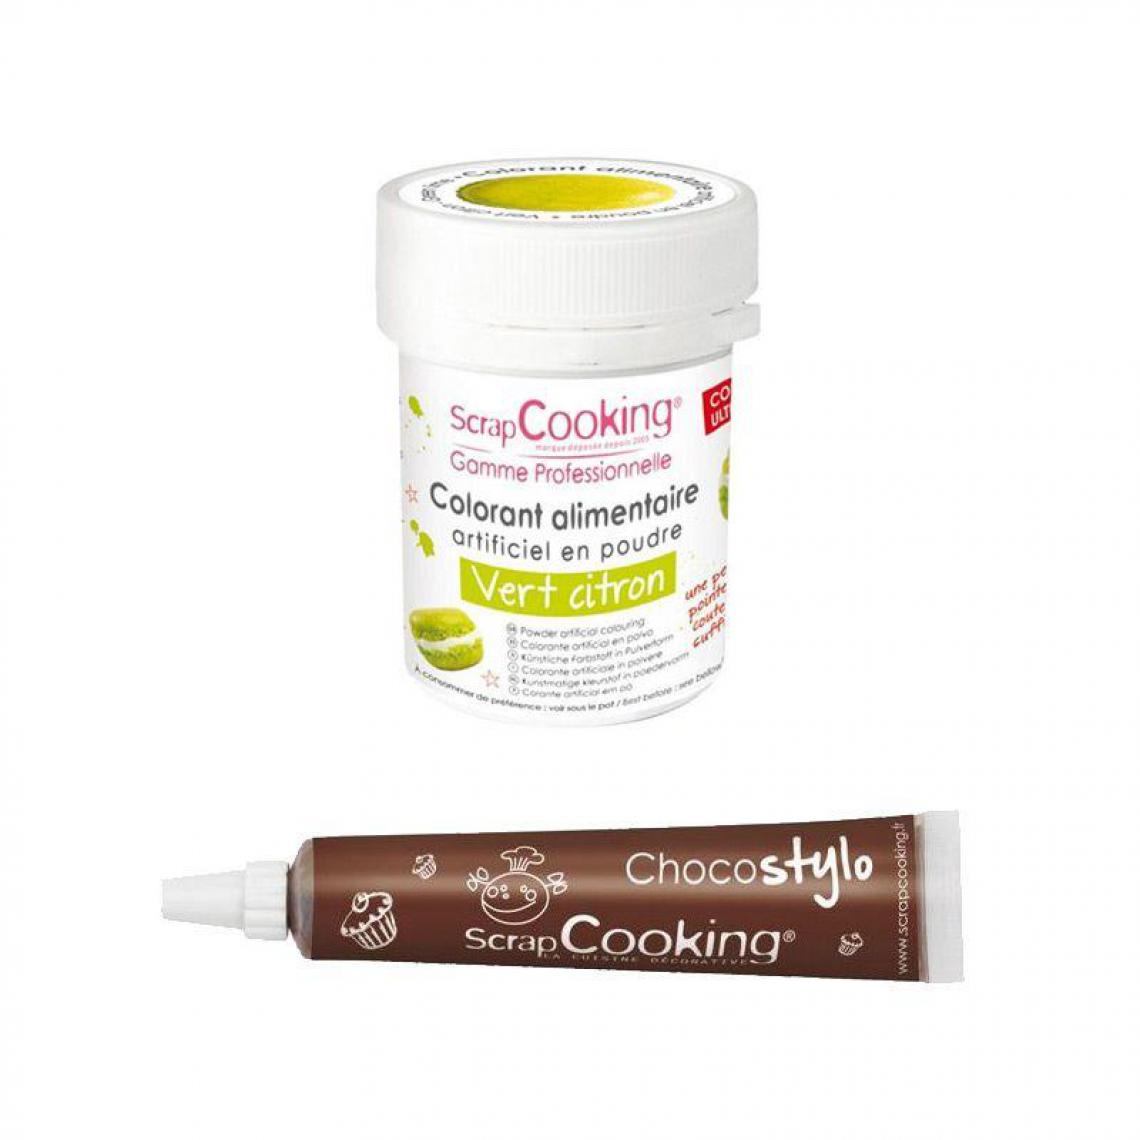 Scrapcooking - Stylo chocolat + Colorant alimentaire Vert citron - Kits créatifs